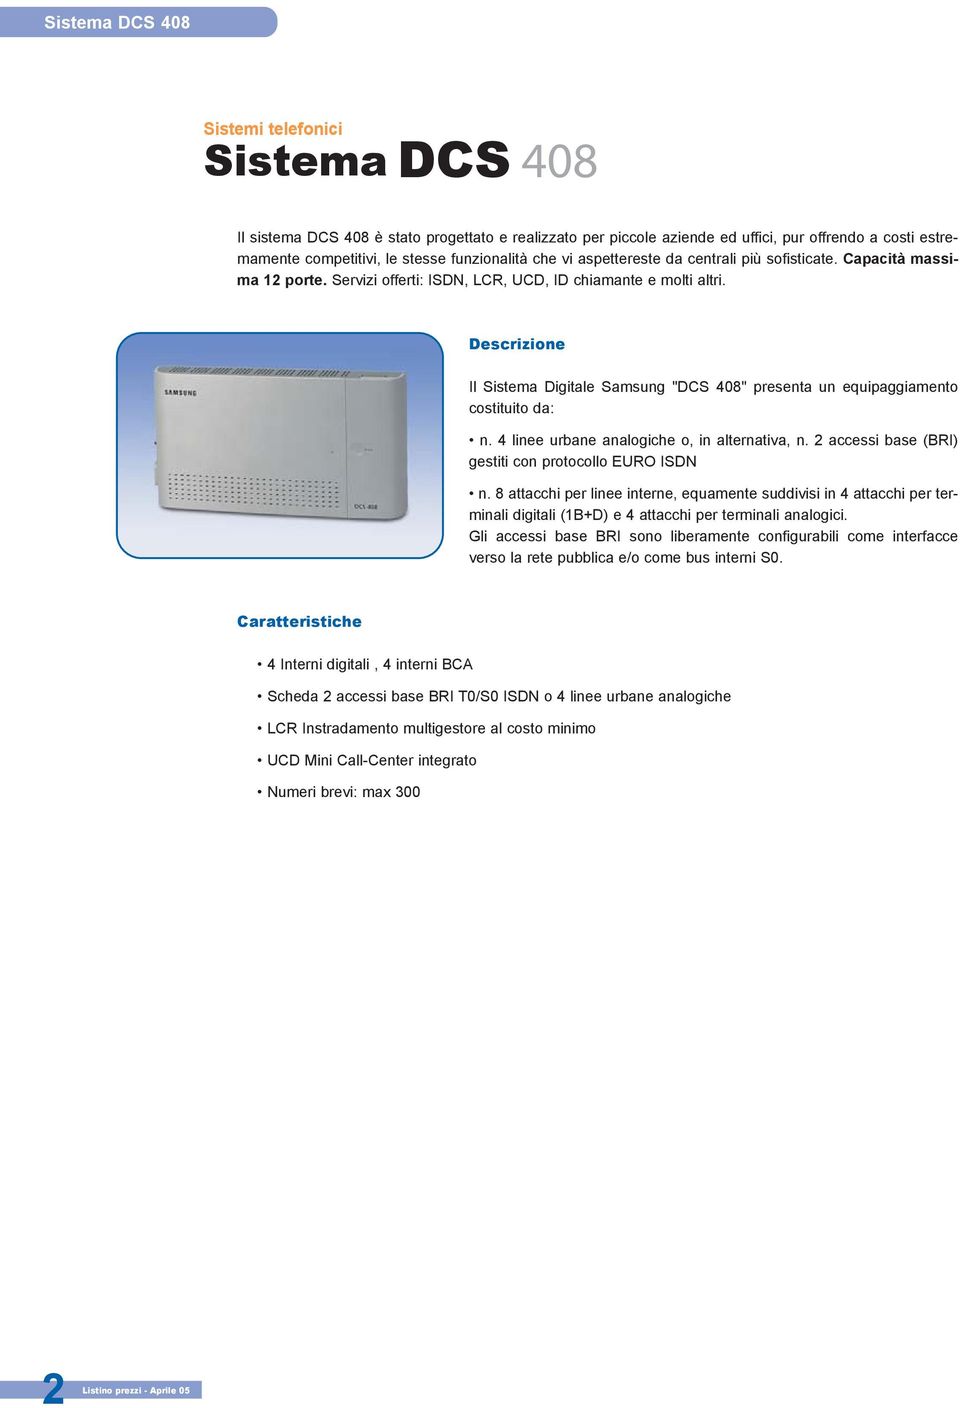 Descrizione Il Sistema Digitale Samsung "DCS 408" presenta un equipaggiamento costituito da: n. 4 linee urbane analogiche o, in alternativa, n. 2 accessi base (BRI) gestiti con protocollo EURO ISDN n.